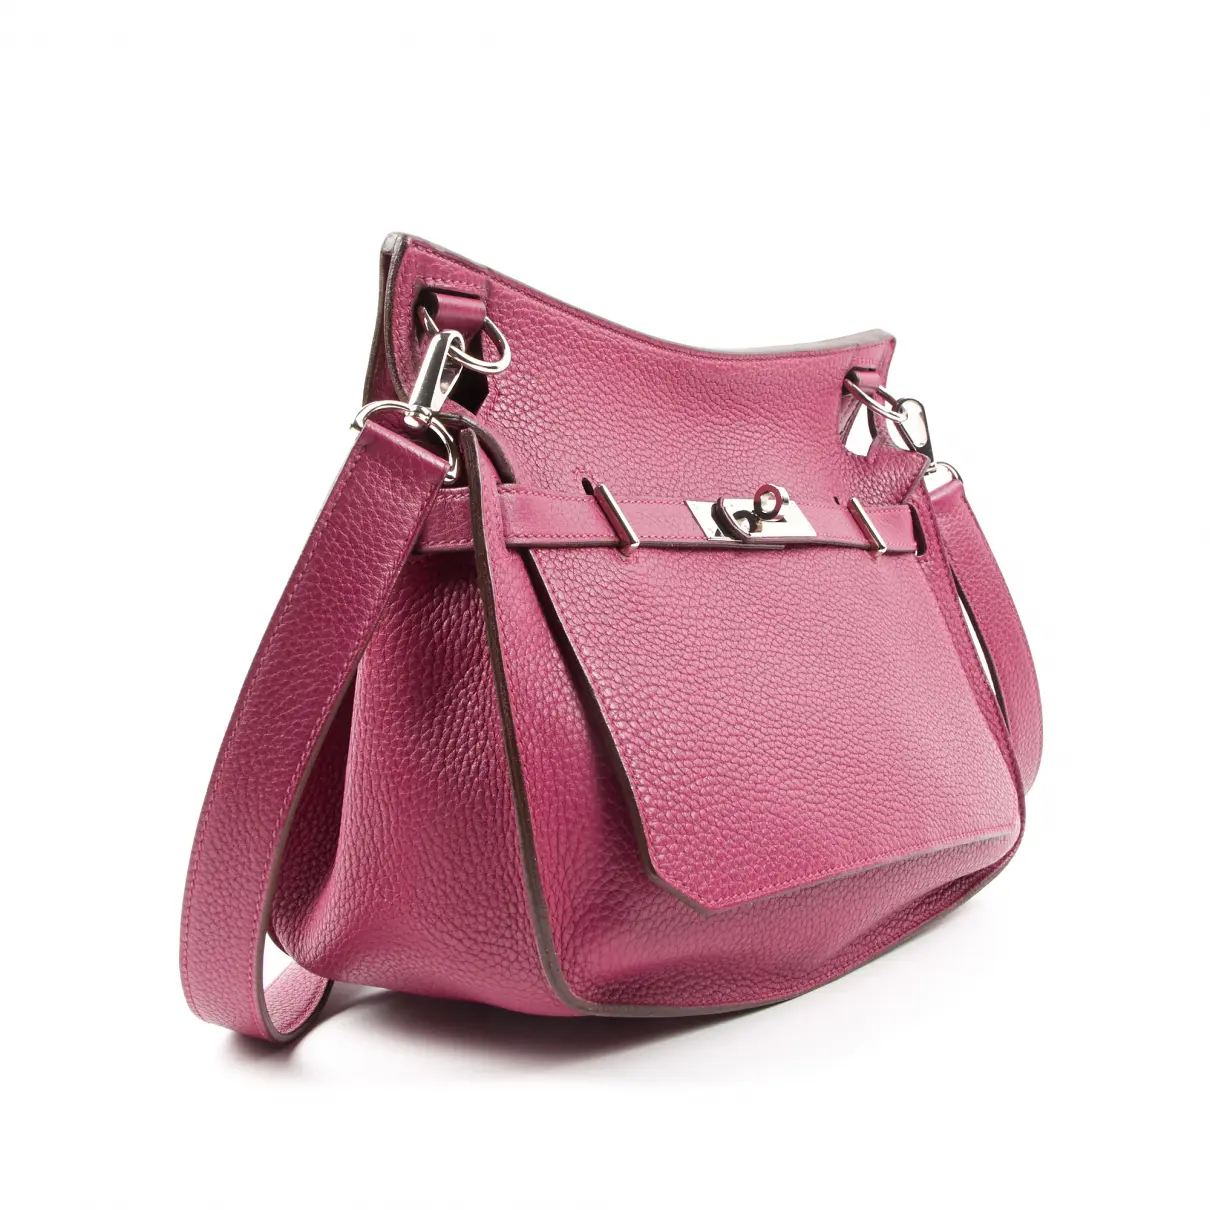 Buy Hermès Jypsiere leather crossbody bag online